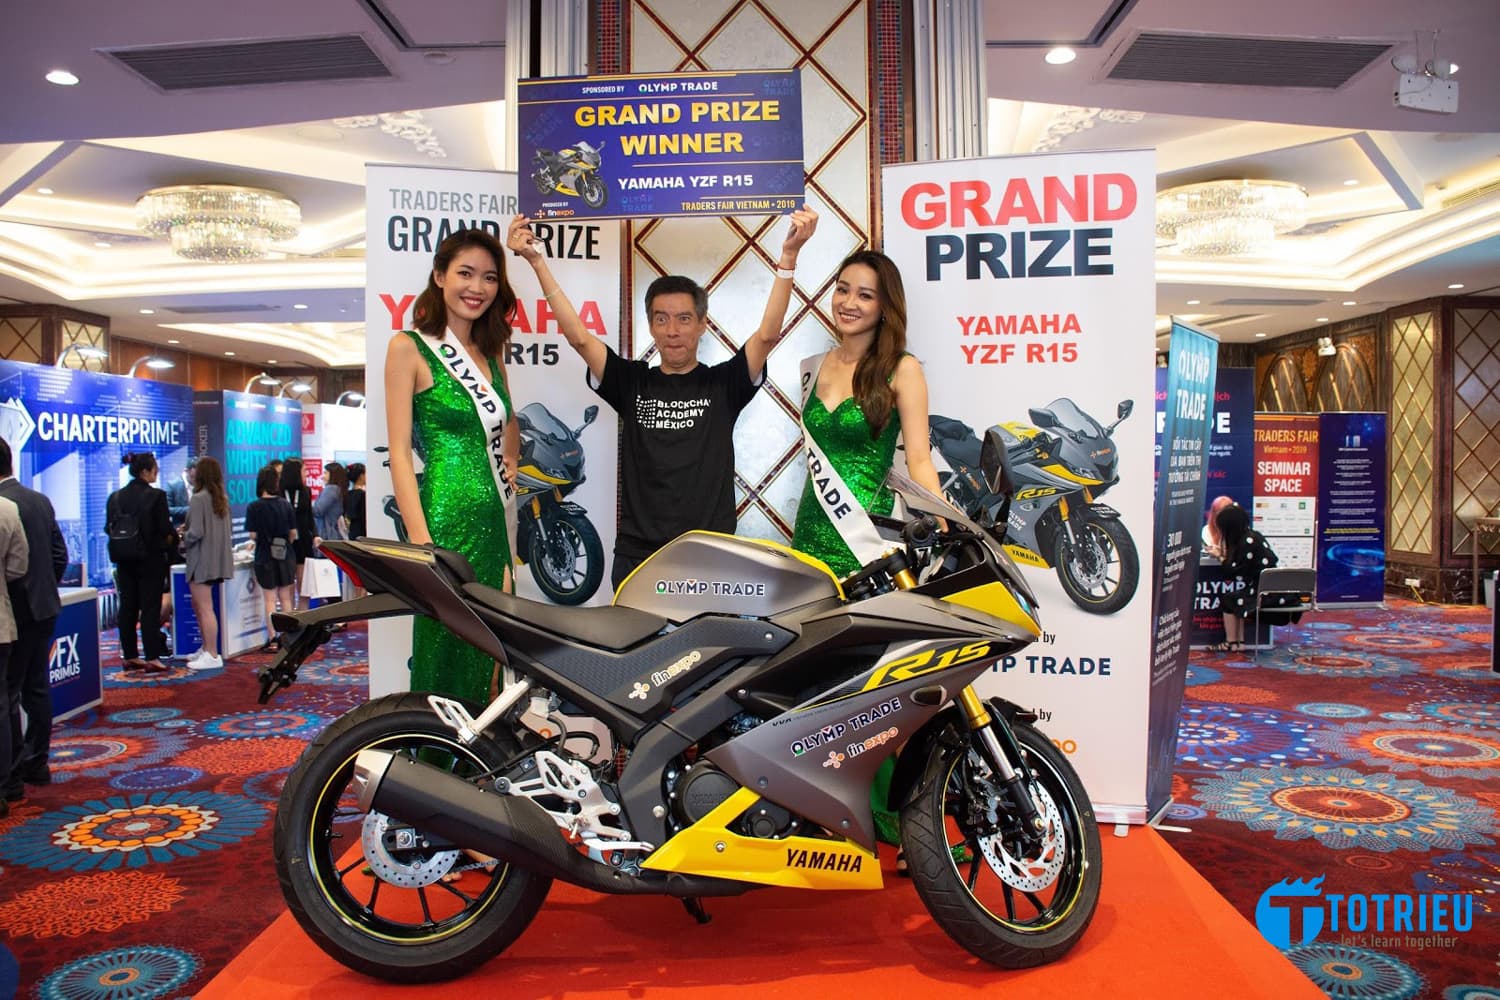 Giải thưởng của Olymp Trade - Một chiếc xe máy Yamaha hoàn toàn mới